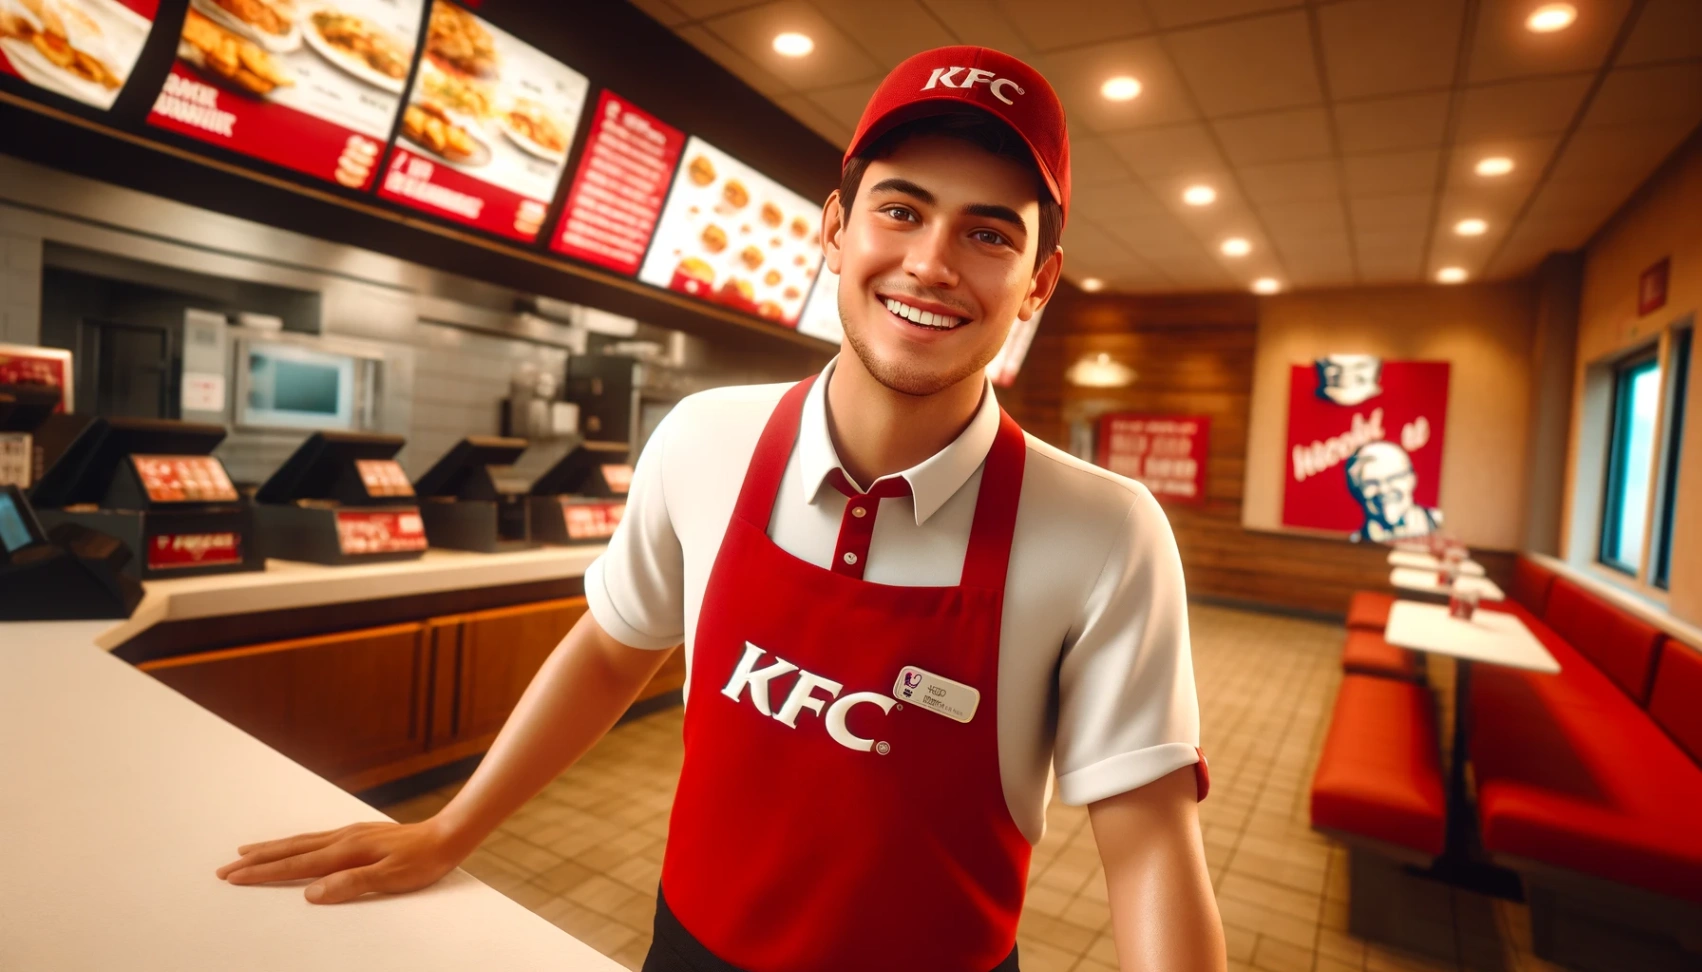 KFC - למד איך להגיש בקשה למשרות פנויות